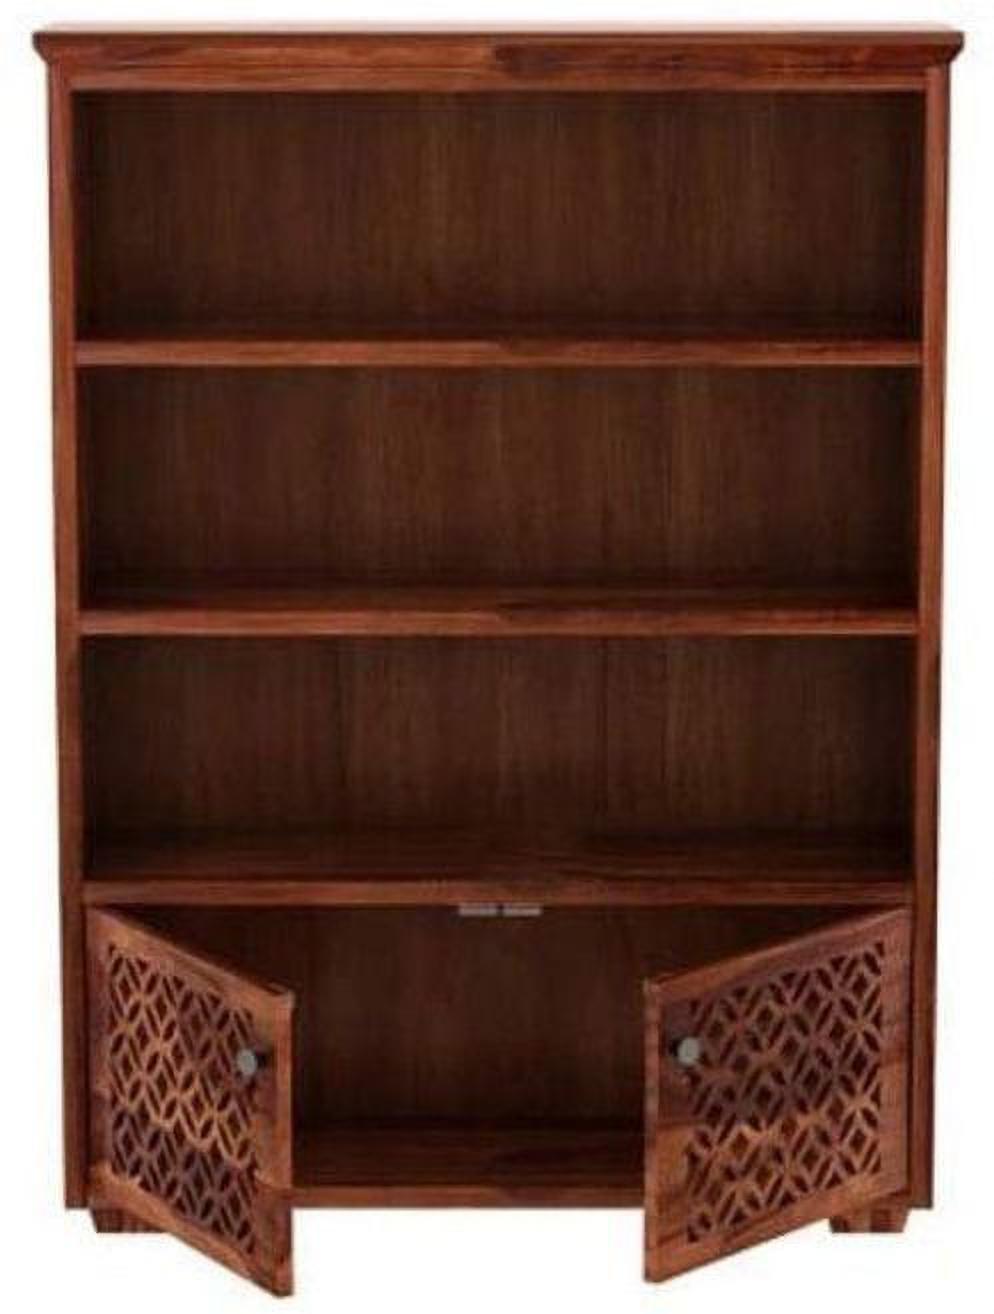 Aaram By Zebrs Display Unit Book Shelves for Living Room Cabinet Storage Solid Wood Close Book Shelf (Finish Color - Teak, Pre-assembled)